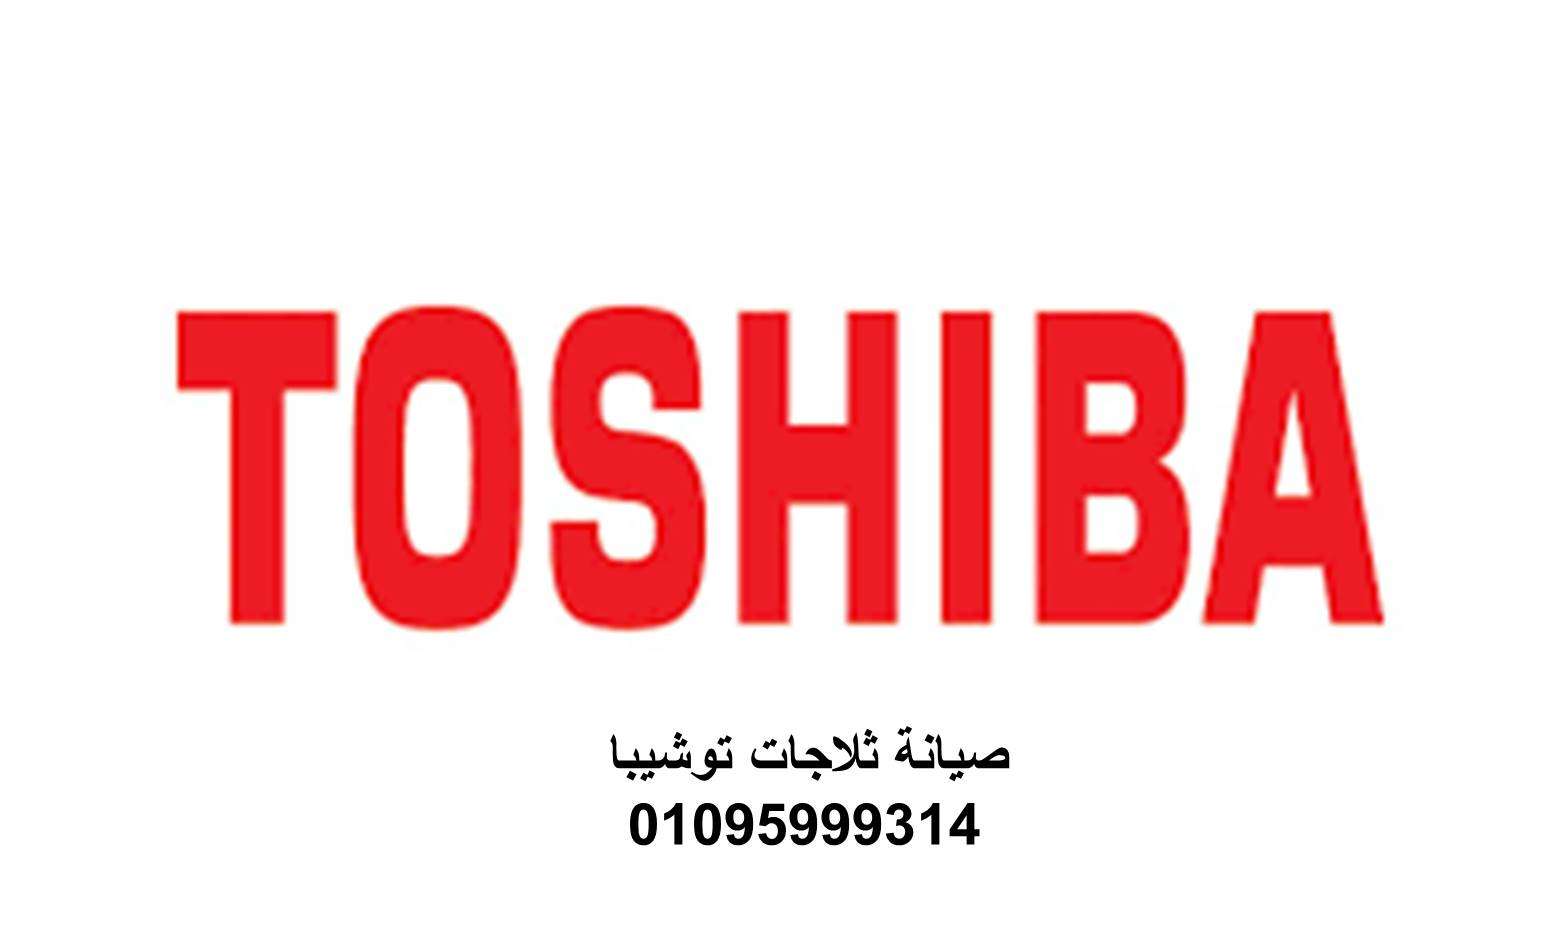 شركة صيانة توشيبا فيصل